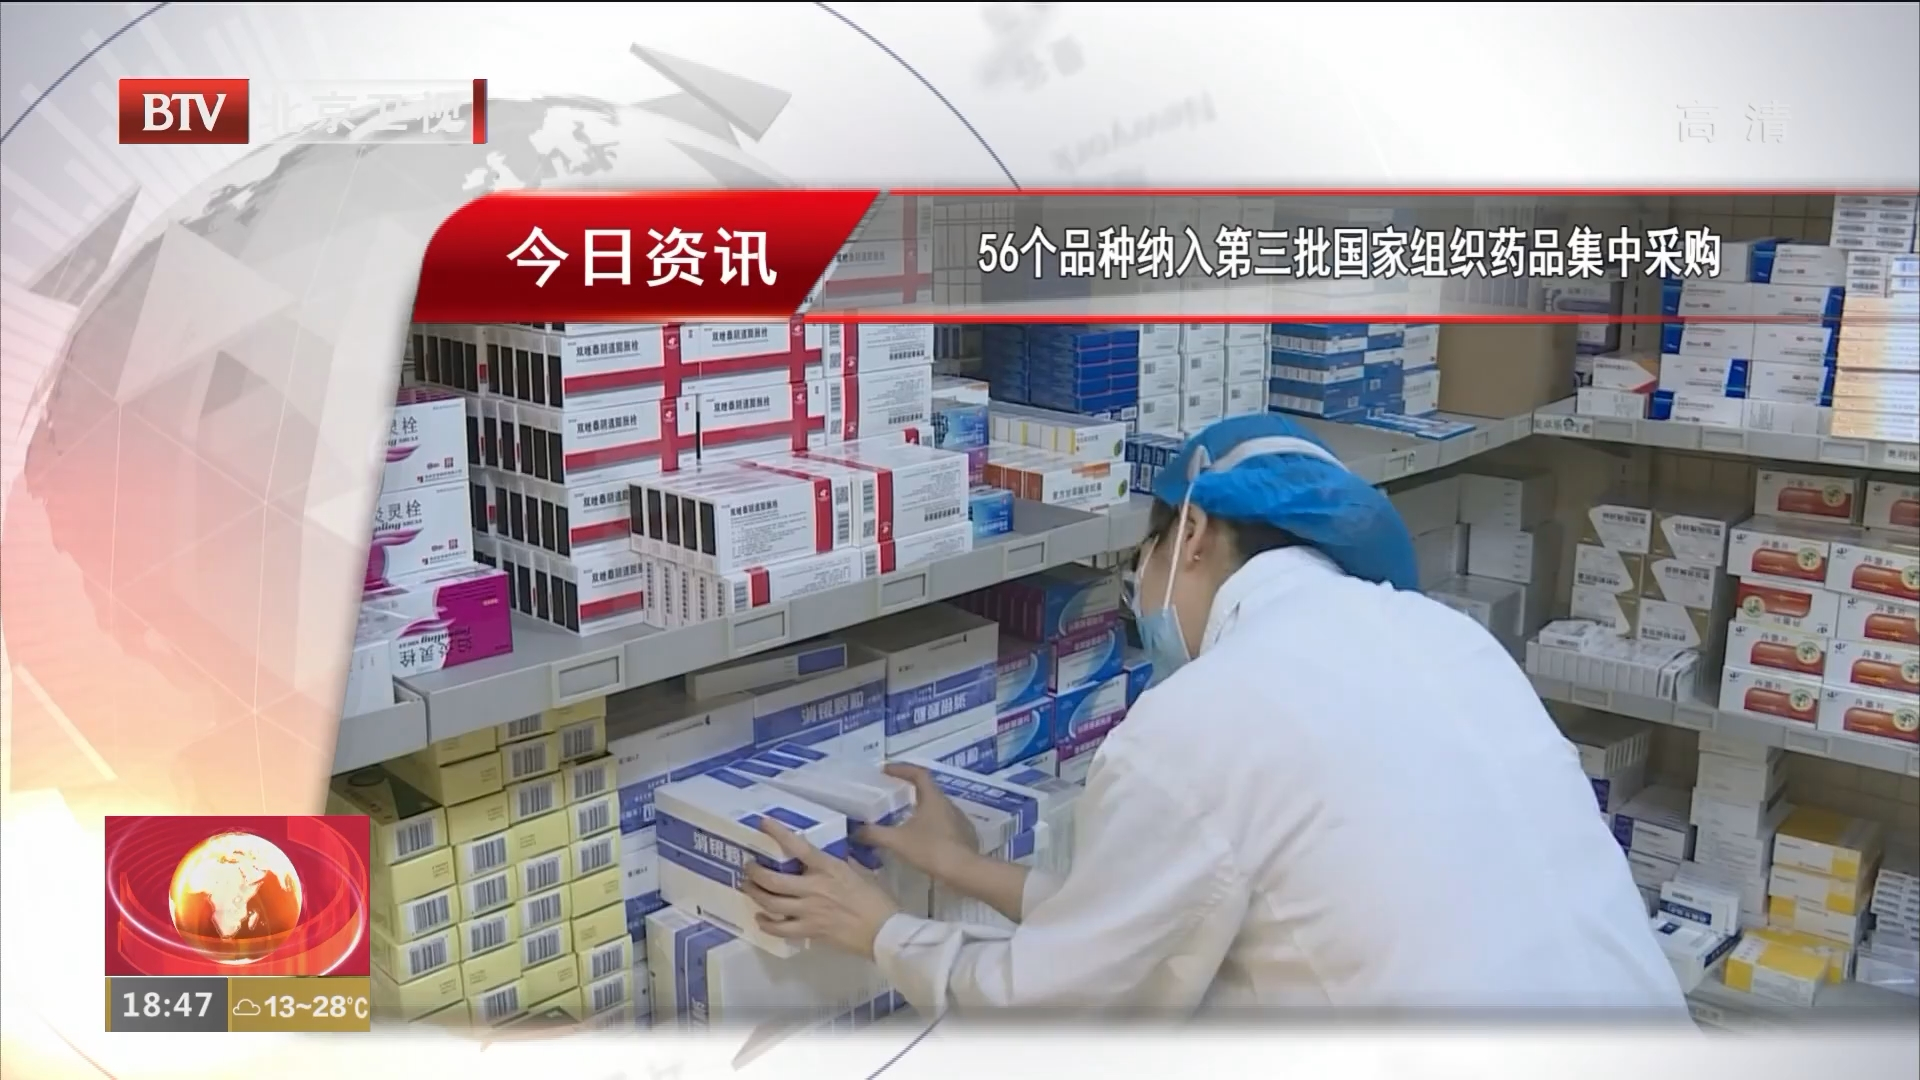 56个品种纳入第三批国家组织药品集中采购